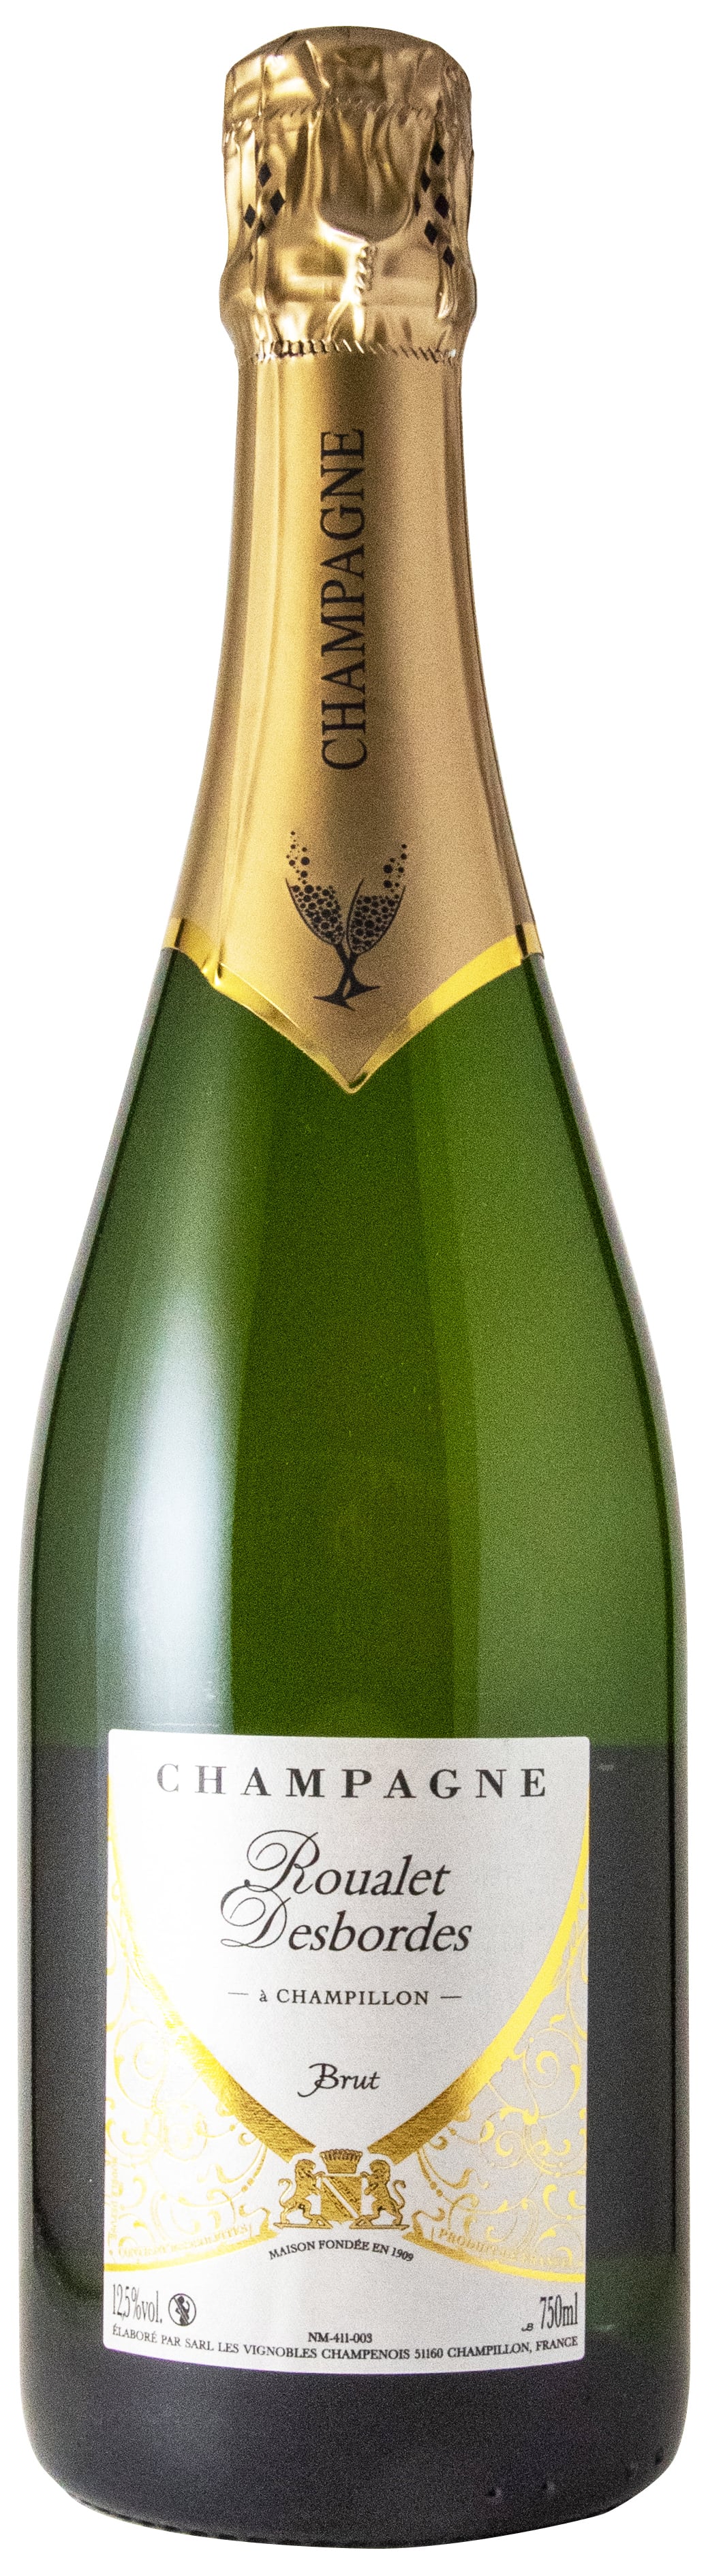 シャンパーニュ オートレオー ド シャンピヨン ルアレ デボルド ブリュット NV Champagne Autreau de Champillon（NM） Roualet Desbordes Brut